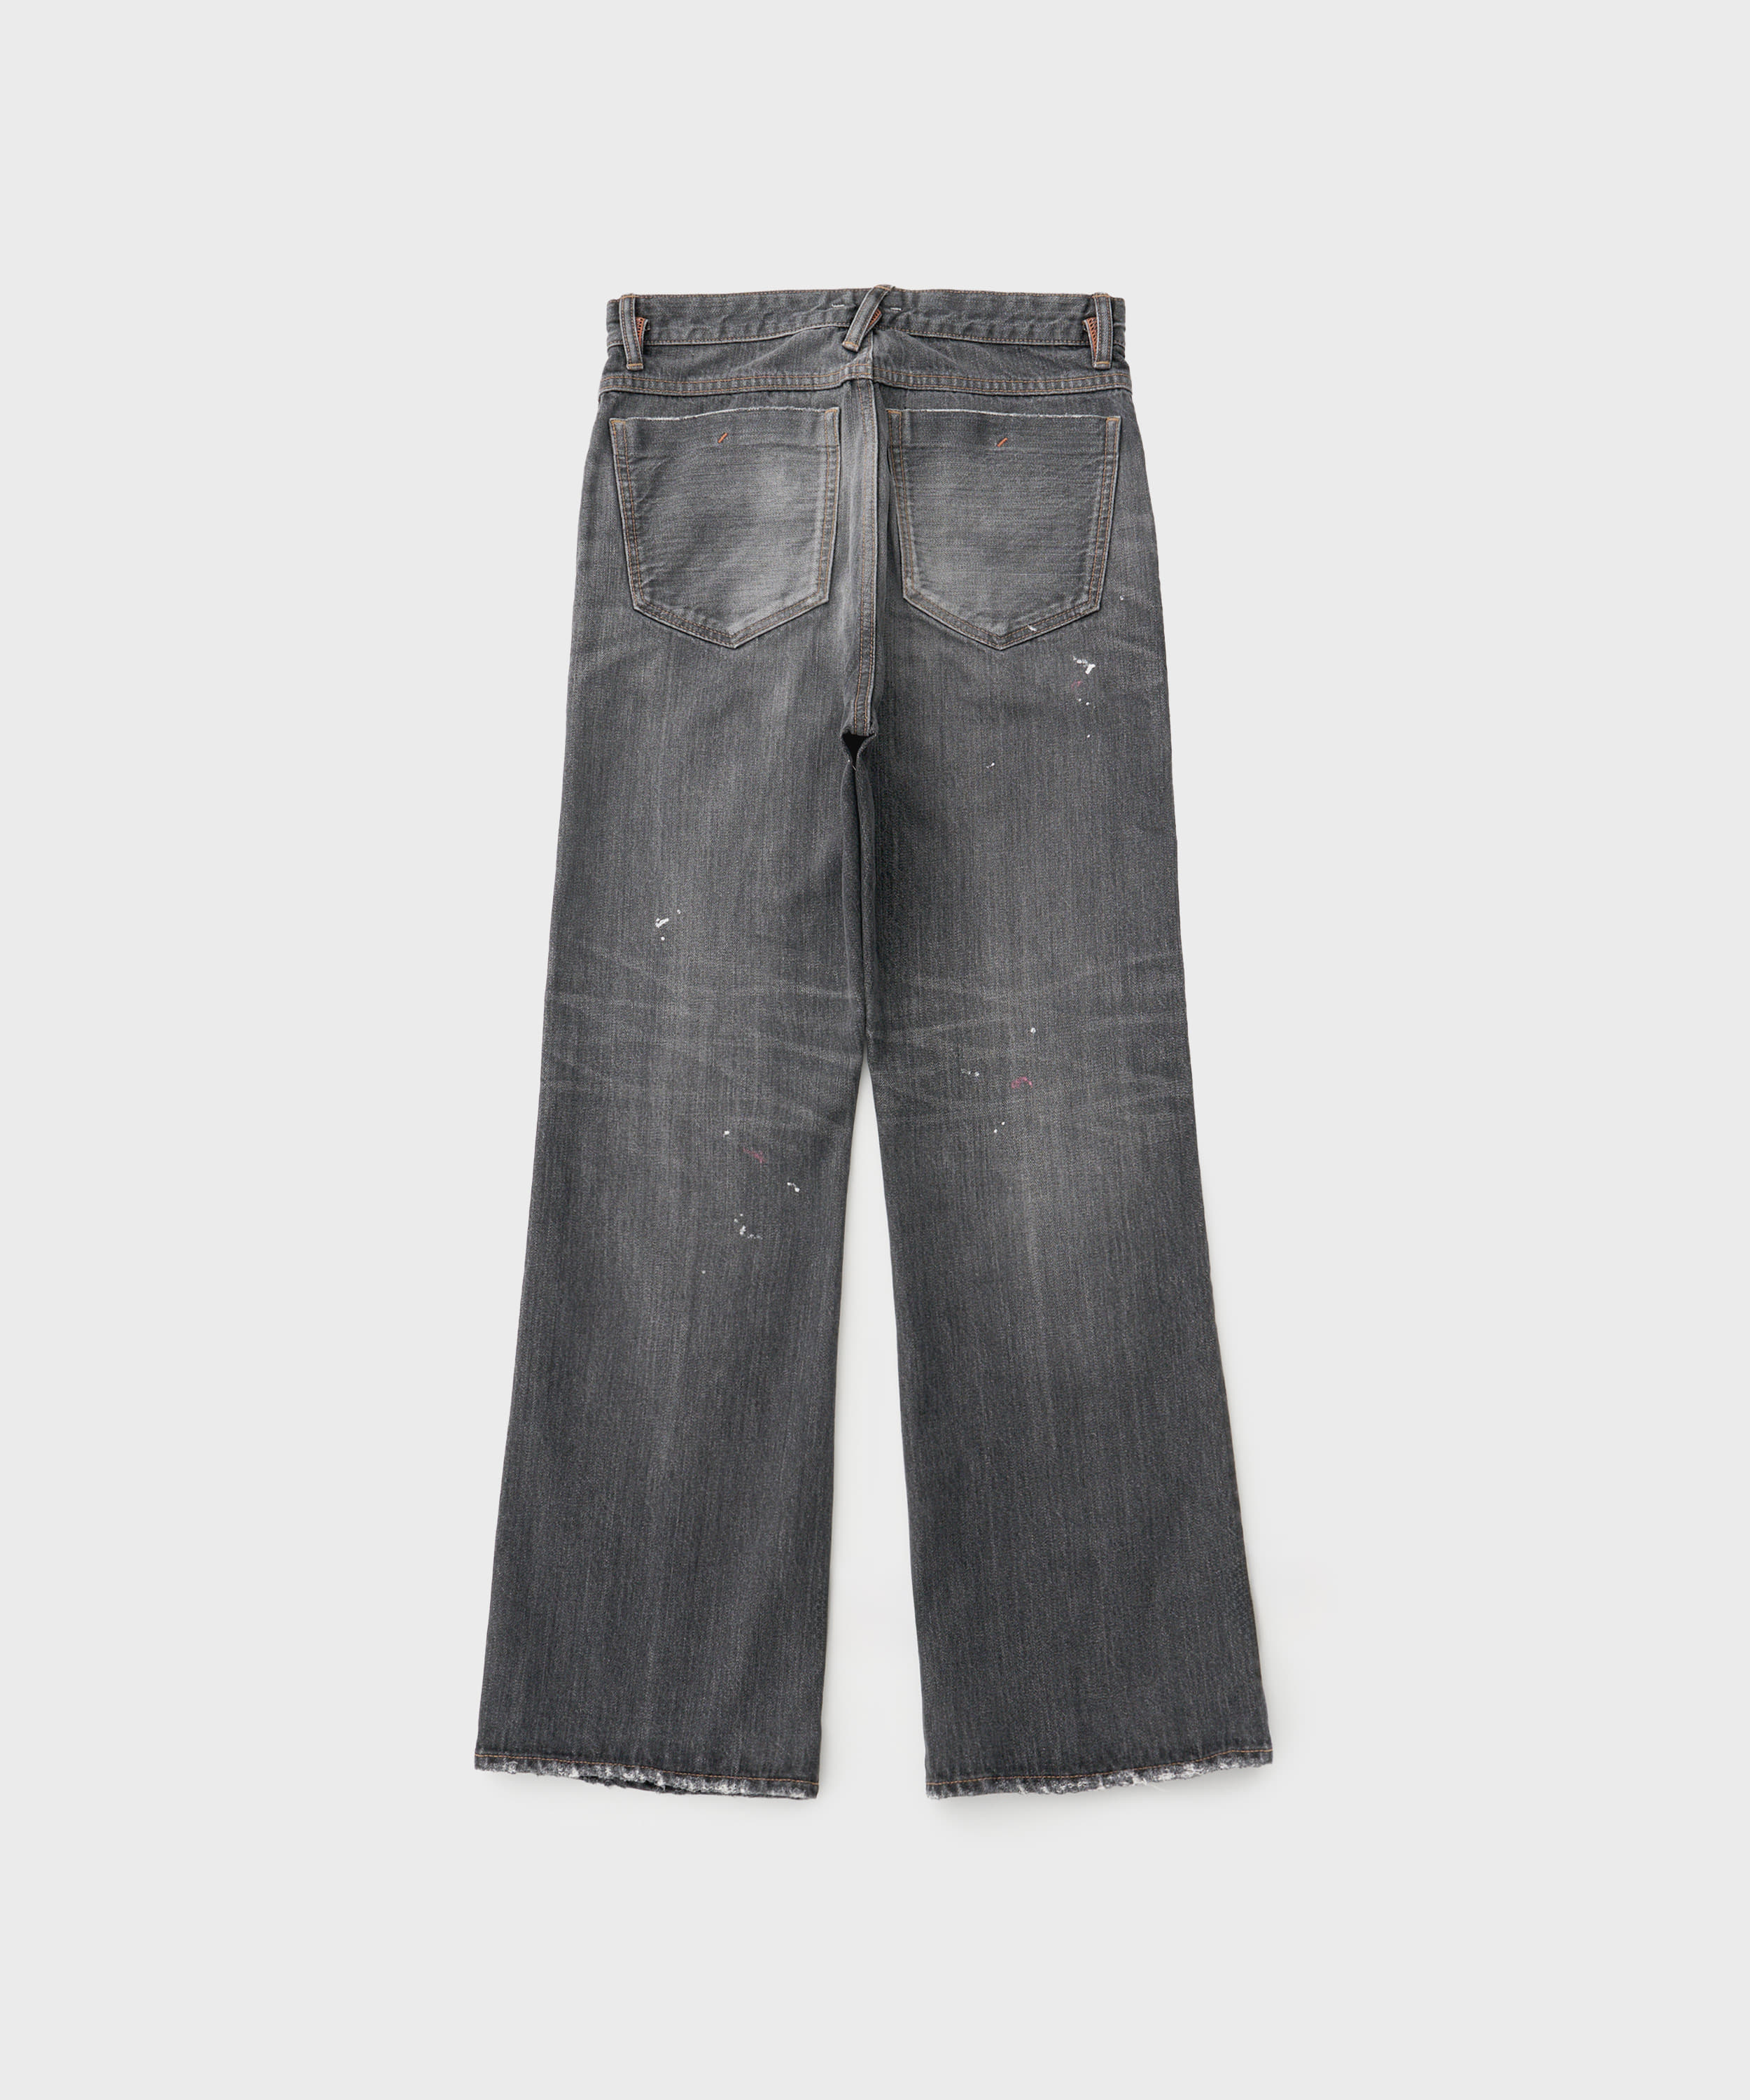 Kamata Denim Trousers Type 2 Vintage (Black)